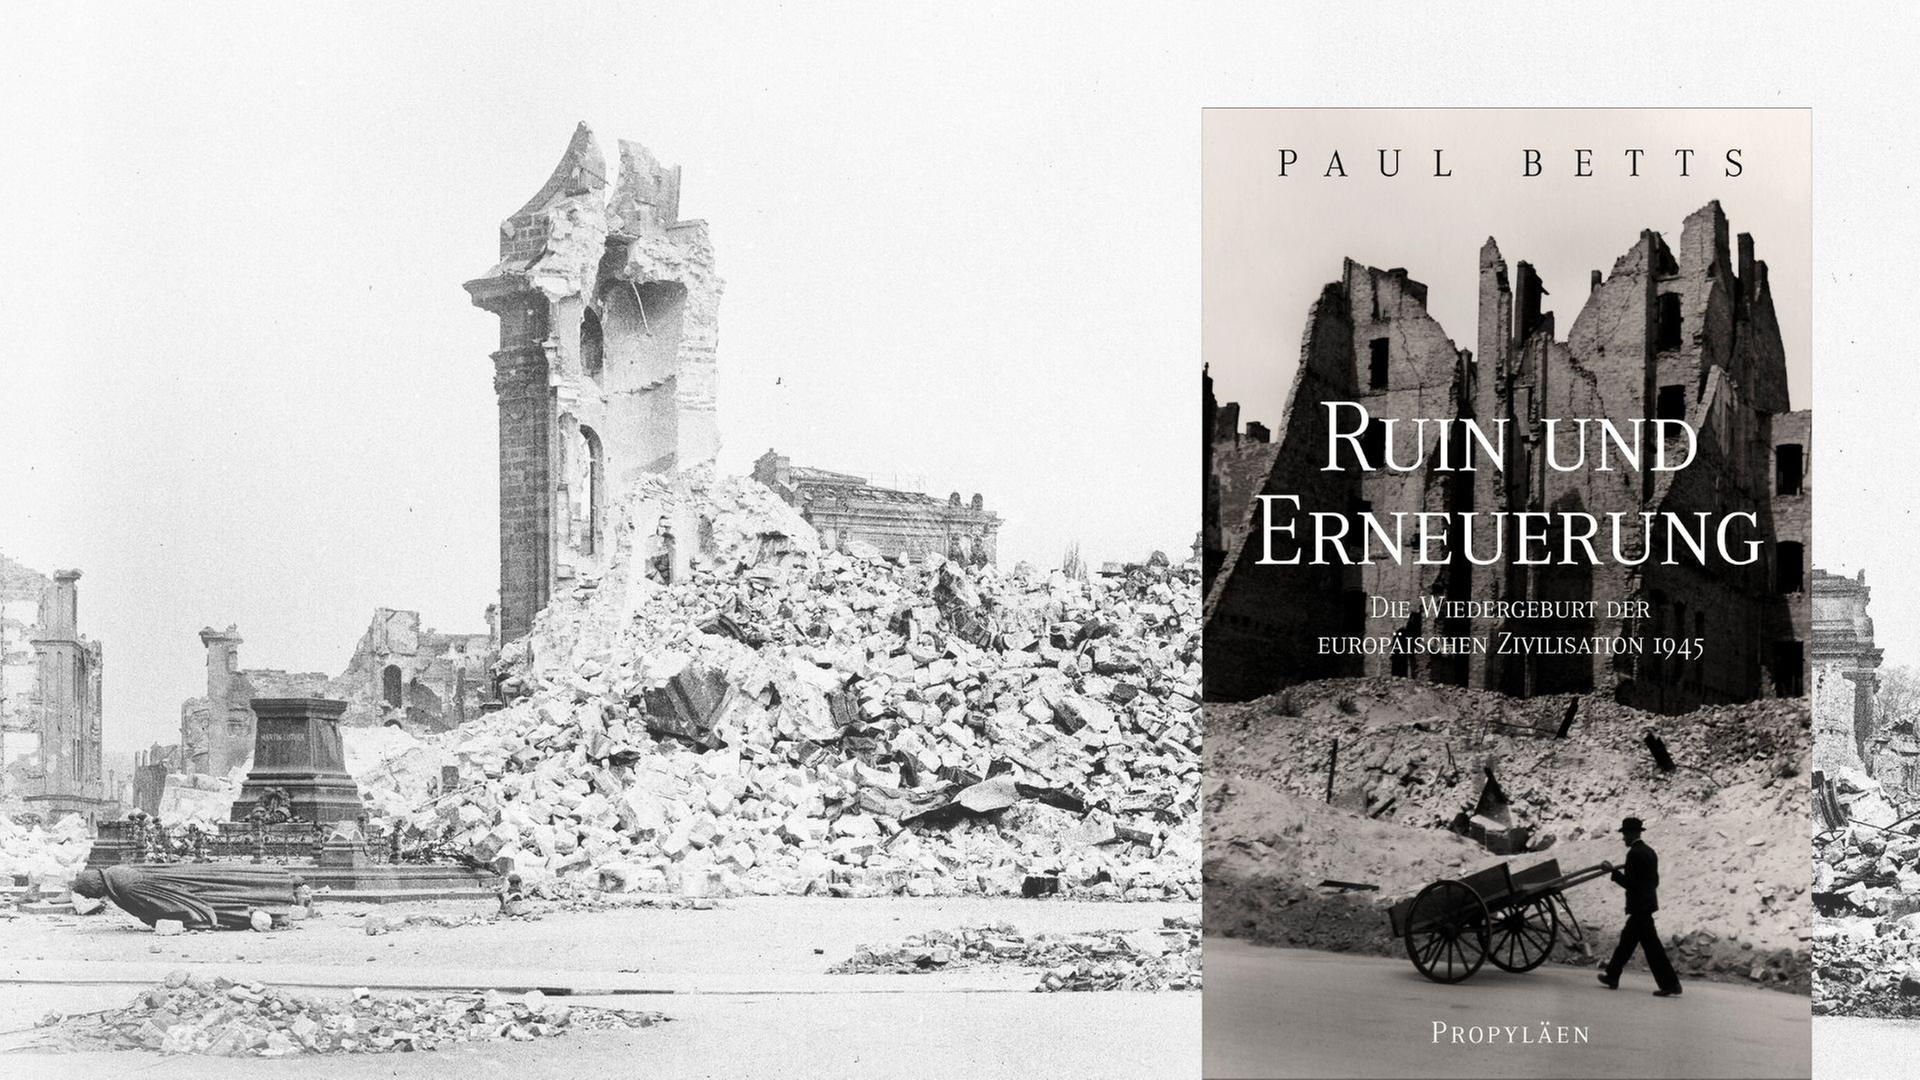 Paul Betts: „Ruin und Erneuerung. Die Wiedergeburt der europäischen Zivilisation 1945", im Hintergrund ist die Ruine der Frauenkirche Dresden zu sehen.